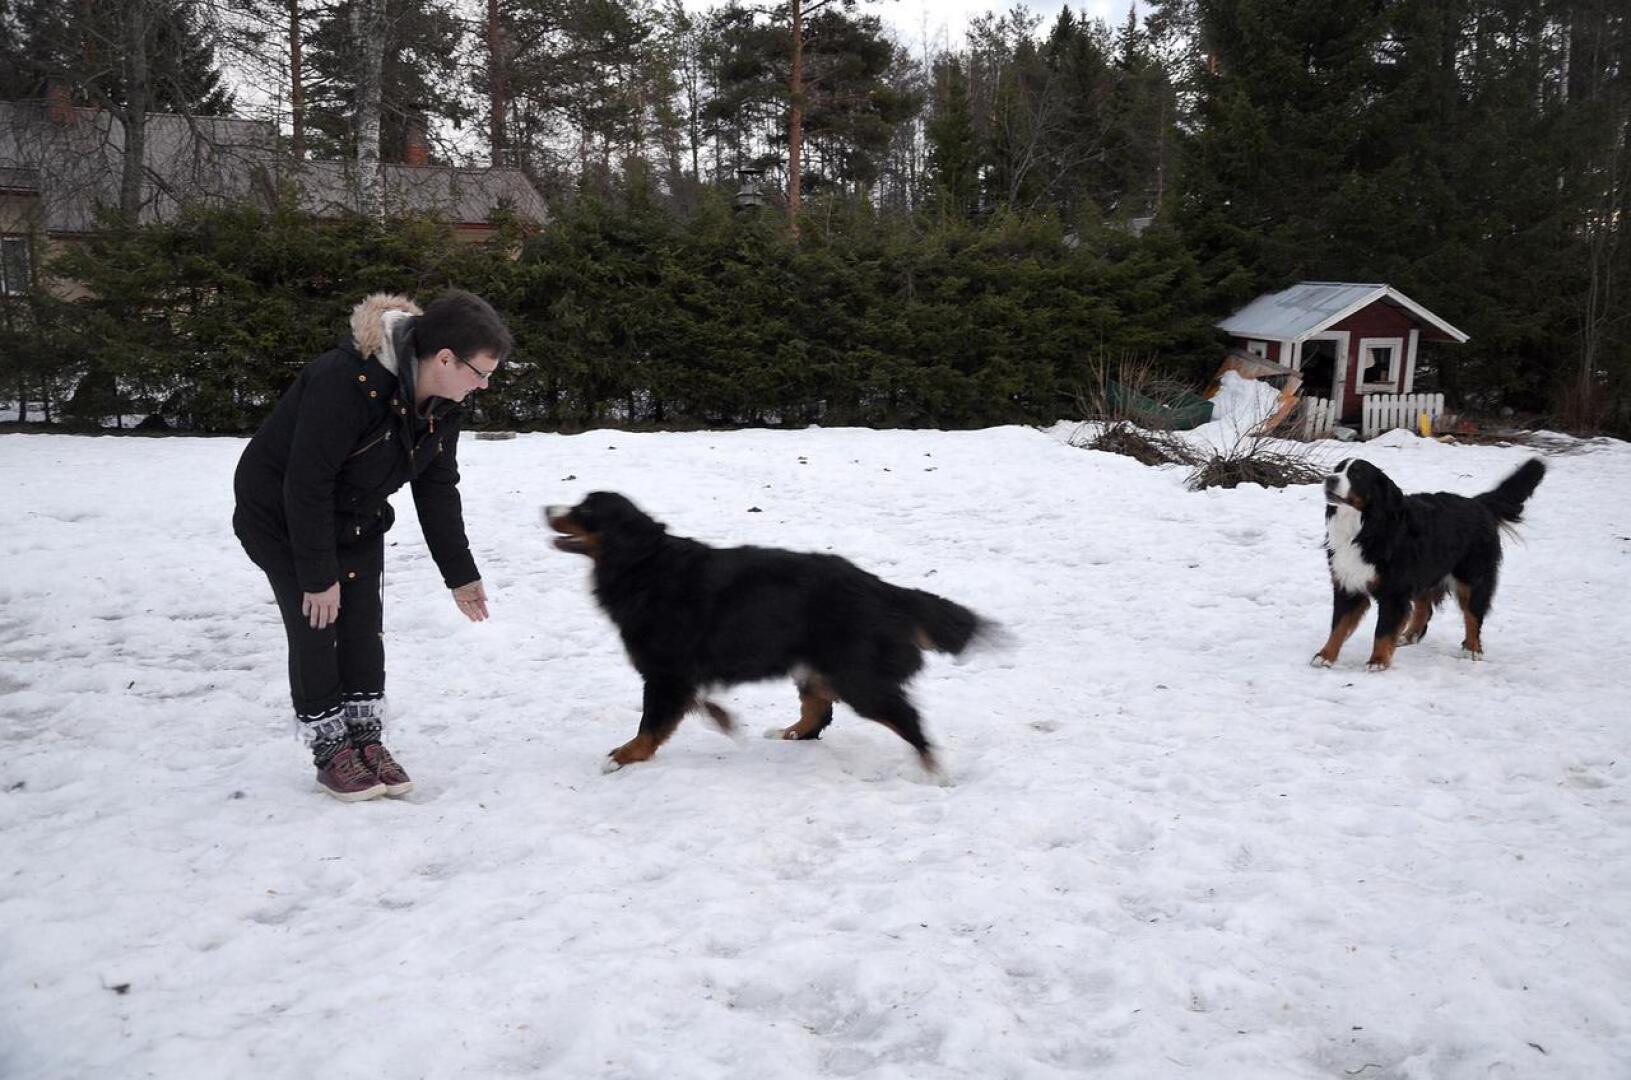 Anu Saukko liikkuu paljon ulkona perheen koirien kanssa, koska nyt jaksaa paremmin kuin vuosi sitten, jolloin painoi puolet nykyistä enemmän.